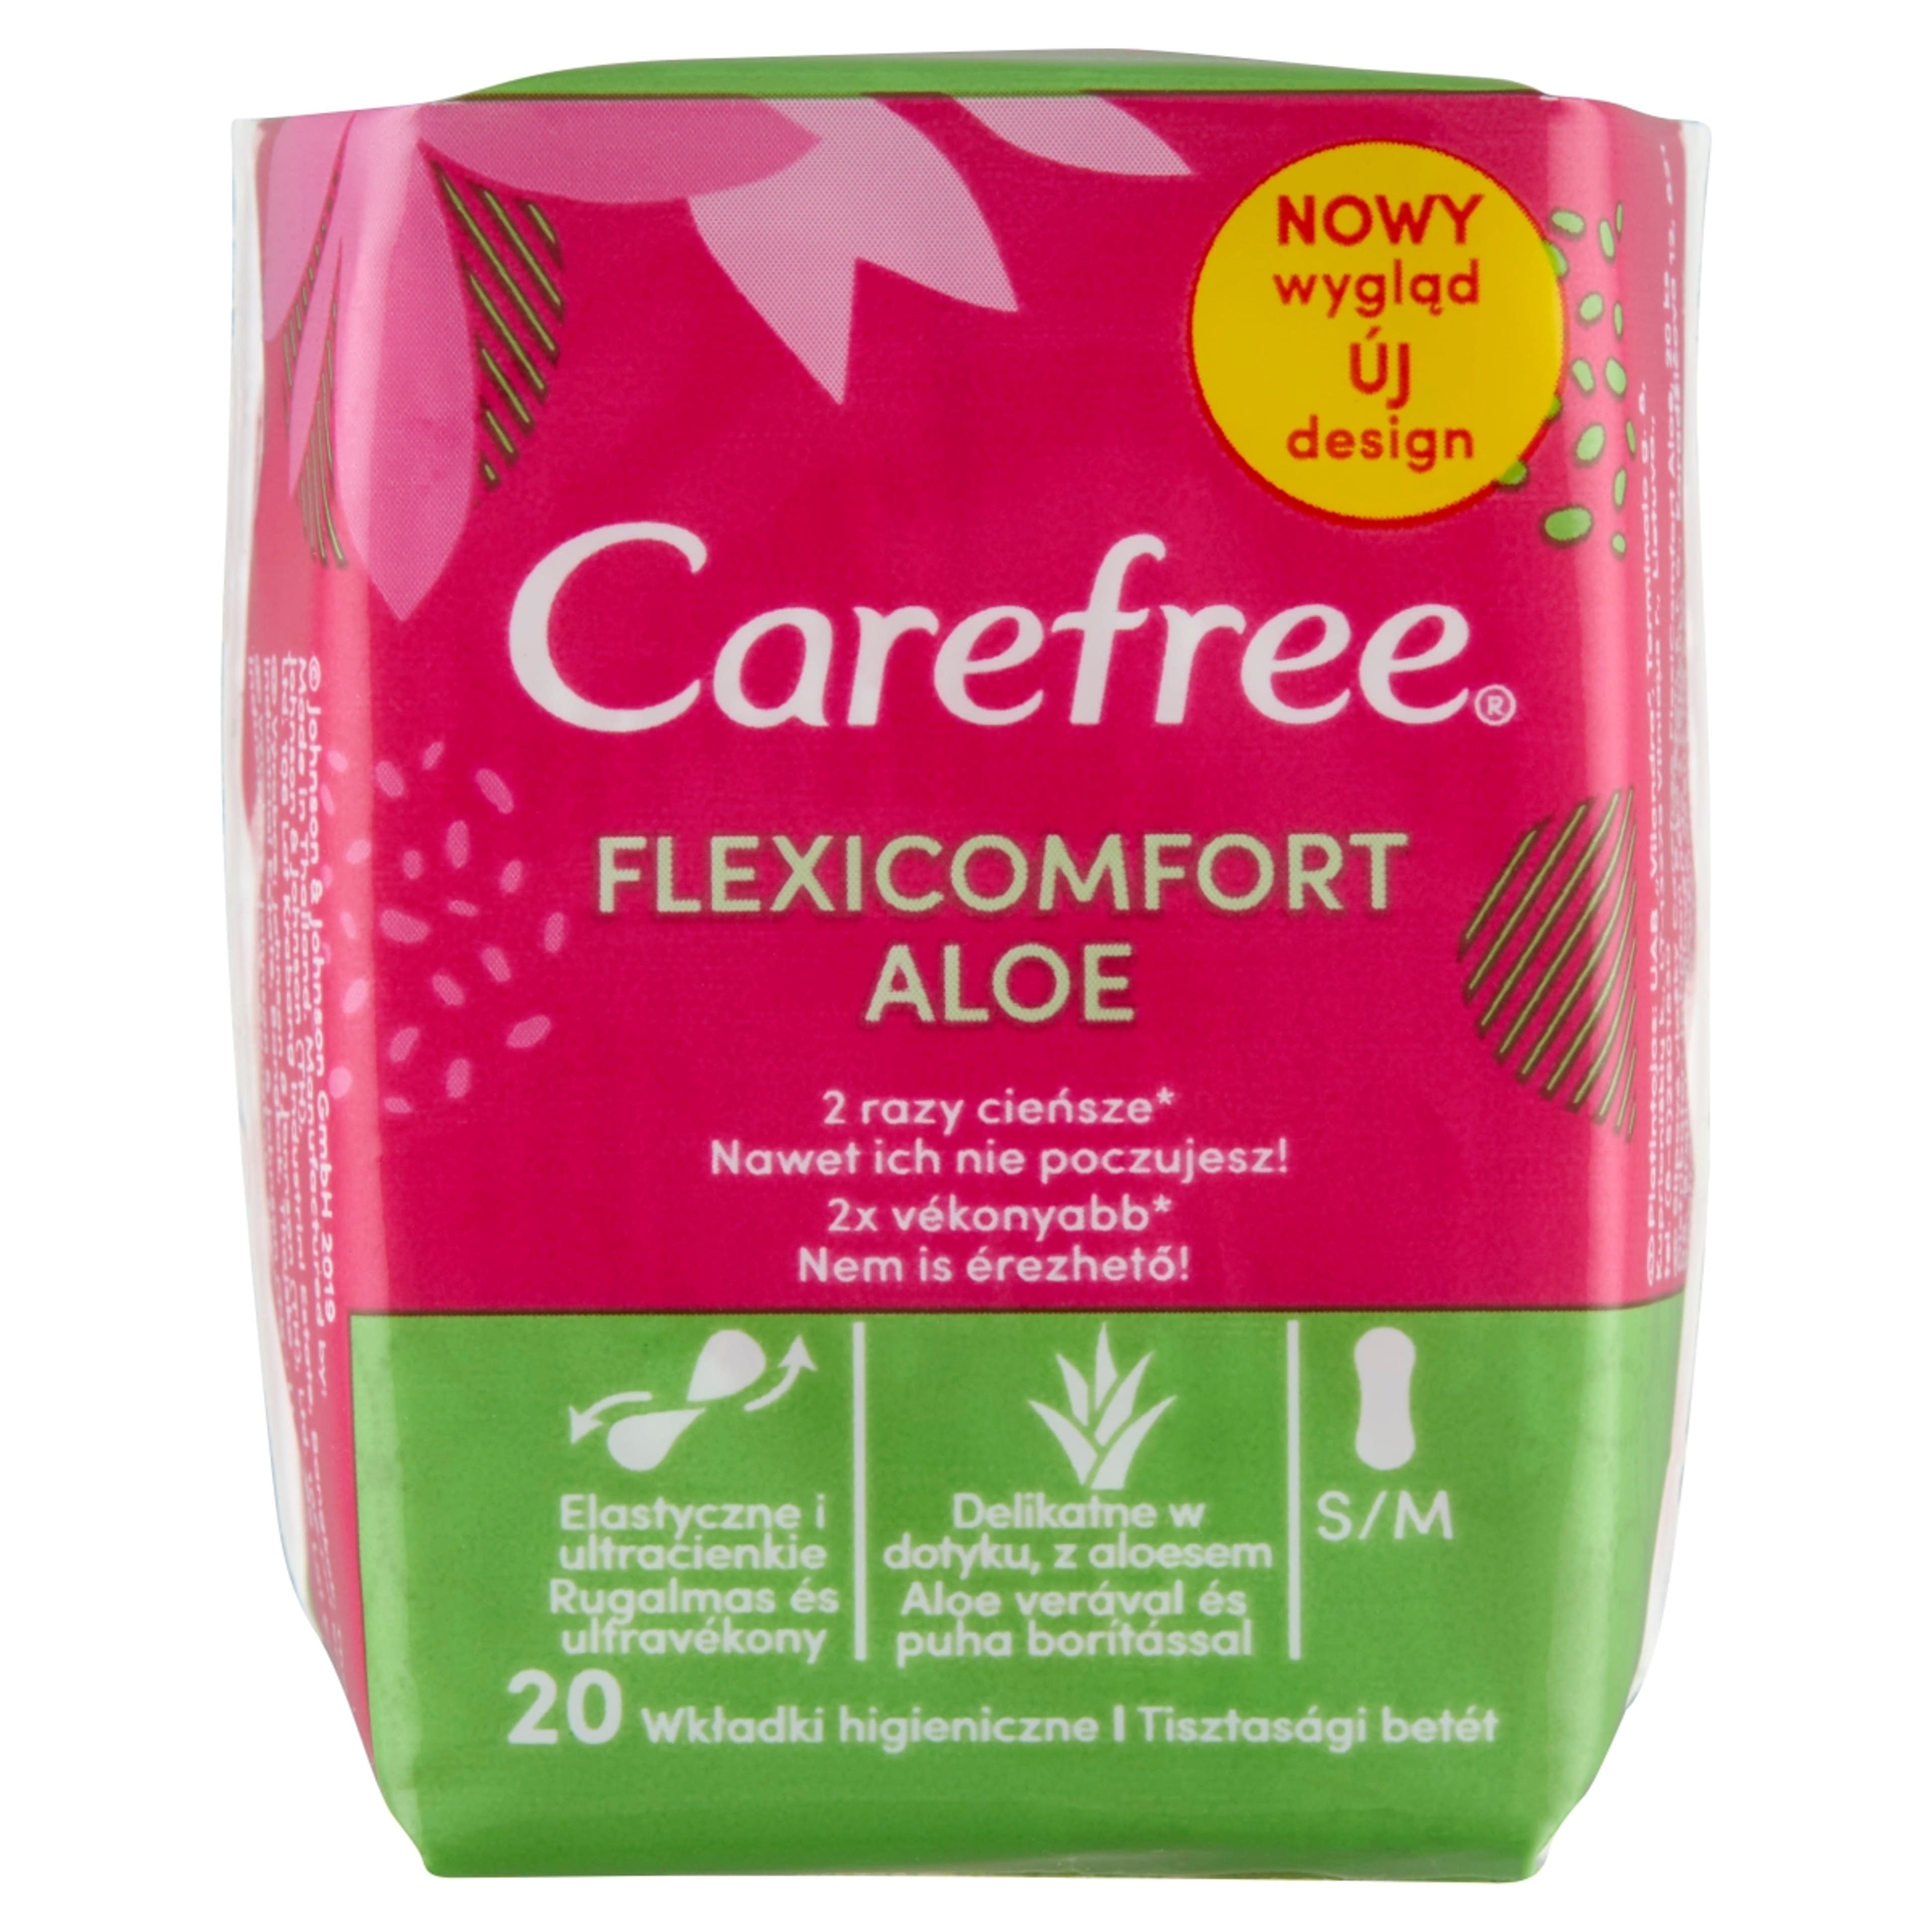 Carefree FlexiComfort Aloe tisztasági betét - 20 db-1